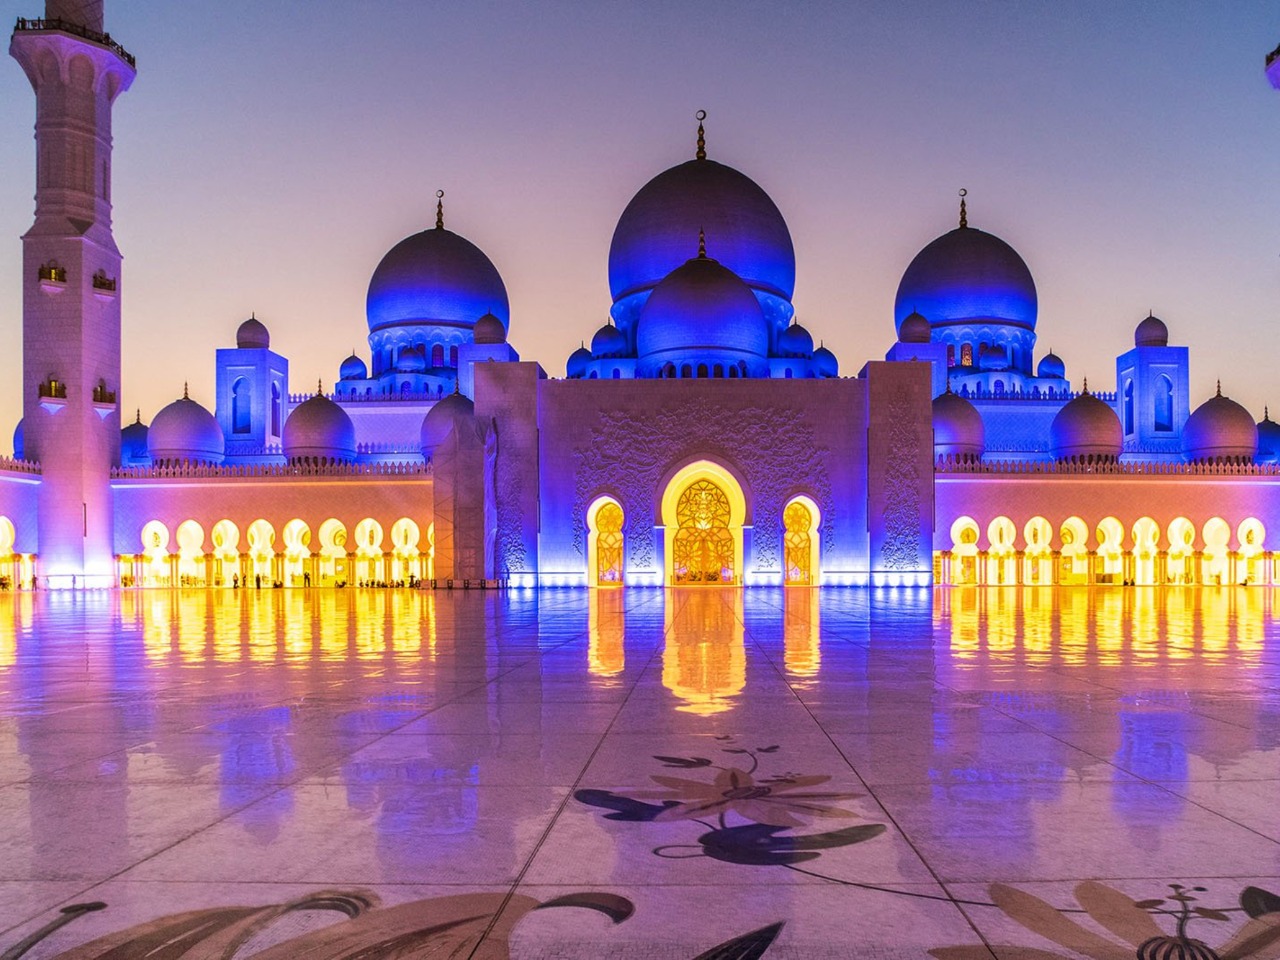 Вечерняя поездка в Абу-Даби | Цена 400$, отзывы, описание экскурсии